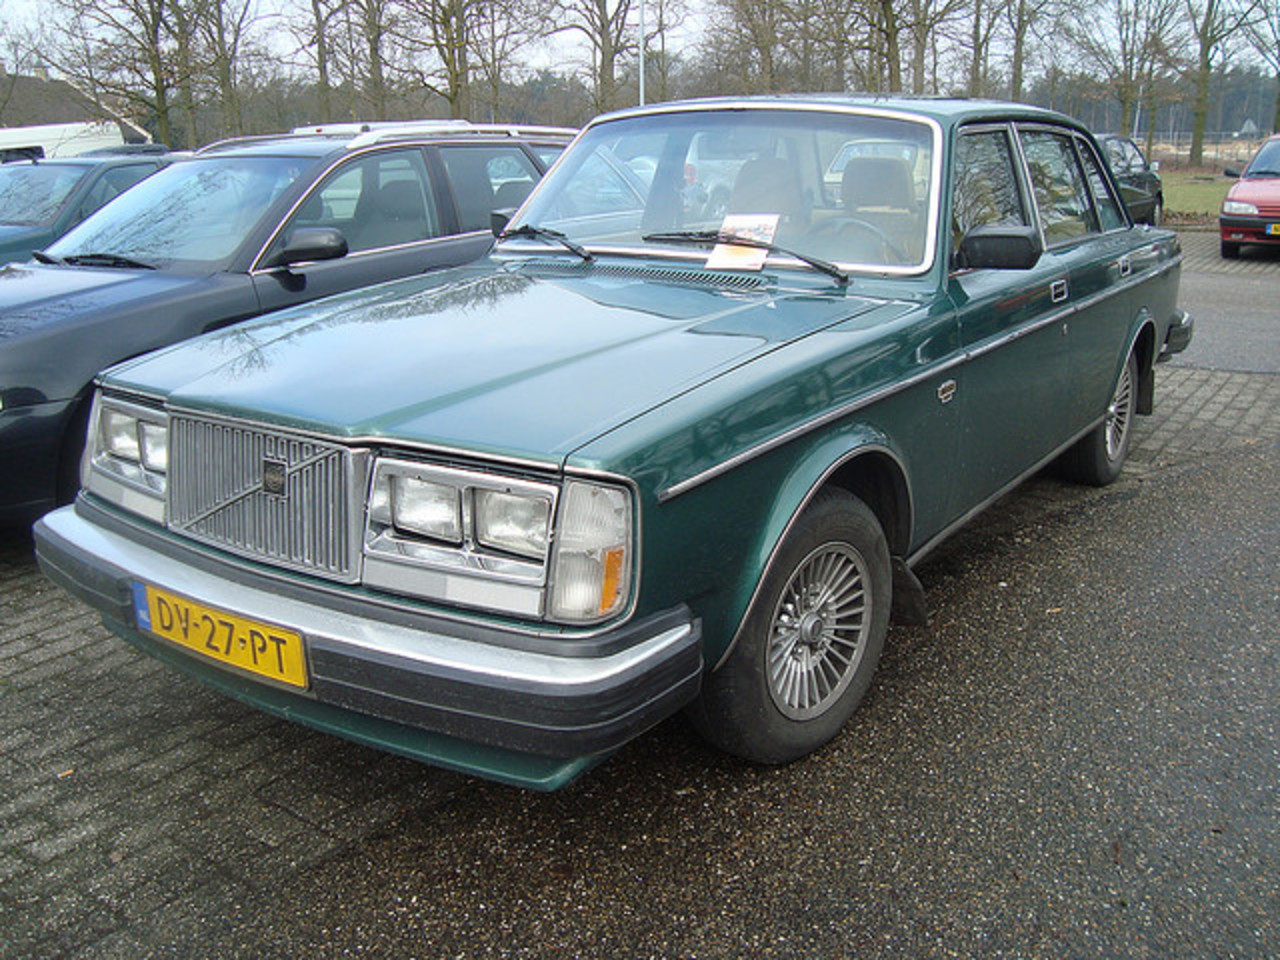 Volvo 264 GLE 1979 (automatique) / Flickr - Partage de photos!